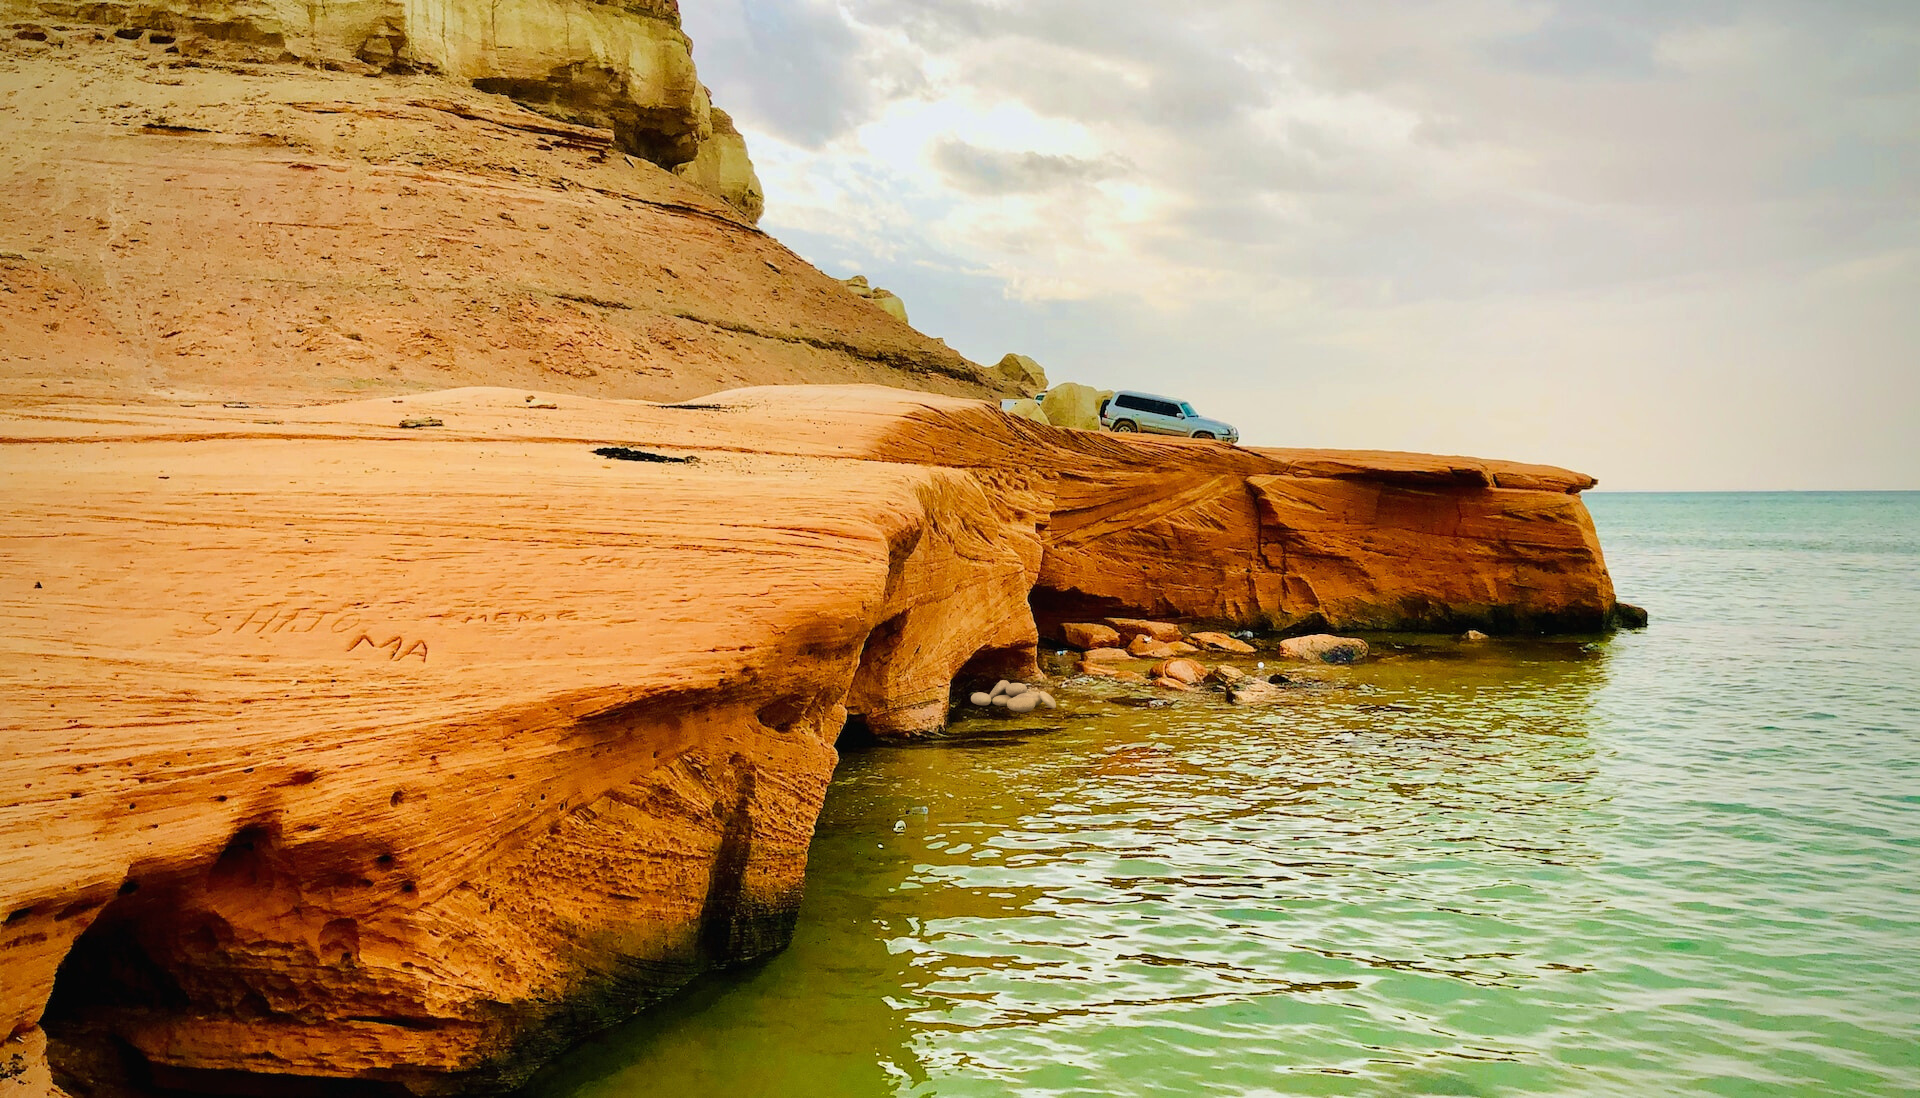 Abu Dhabi beach cliff